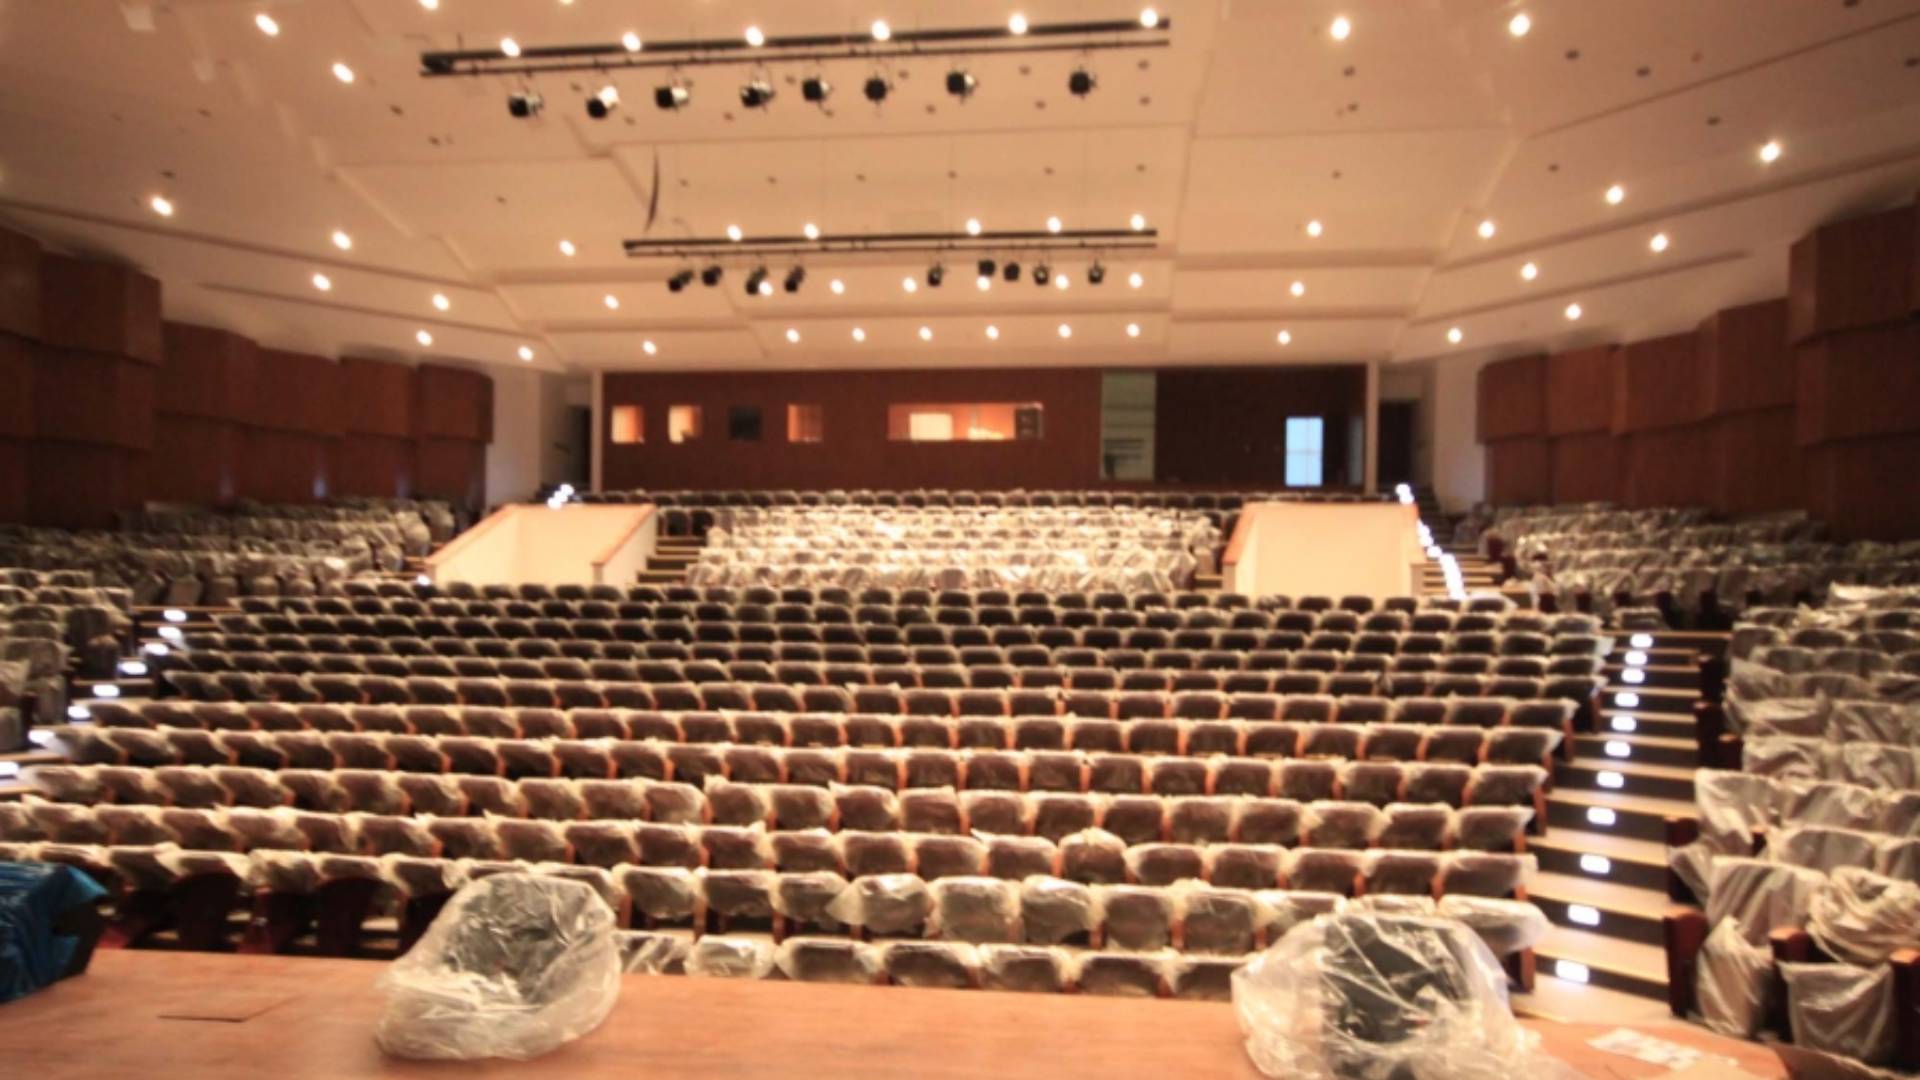 Uludağ University Auditorium